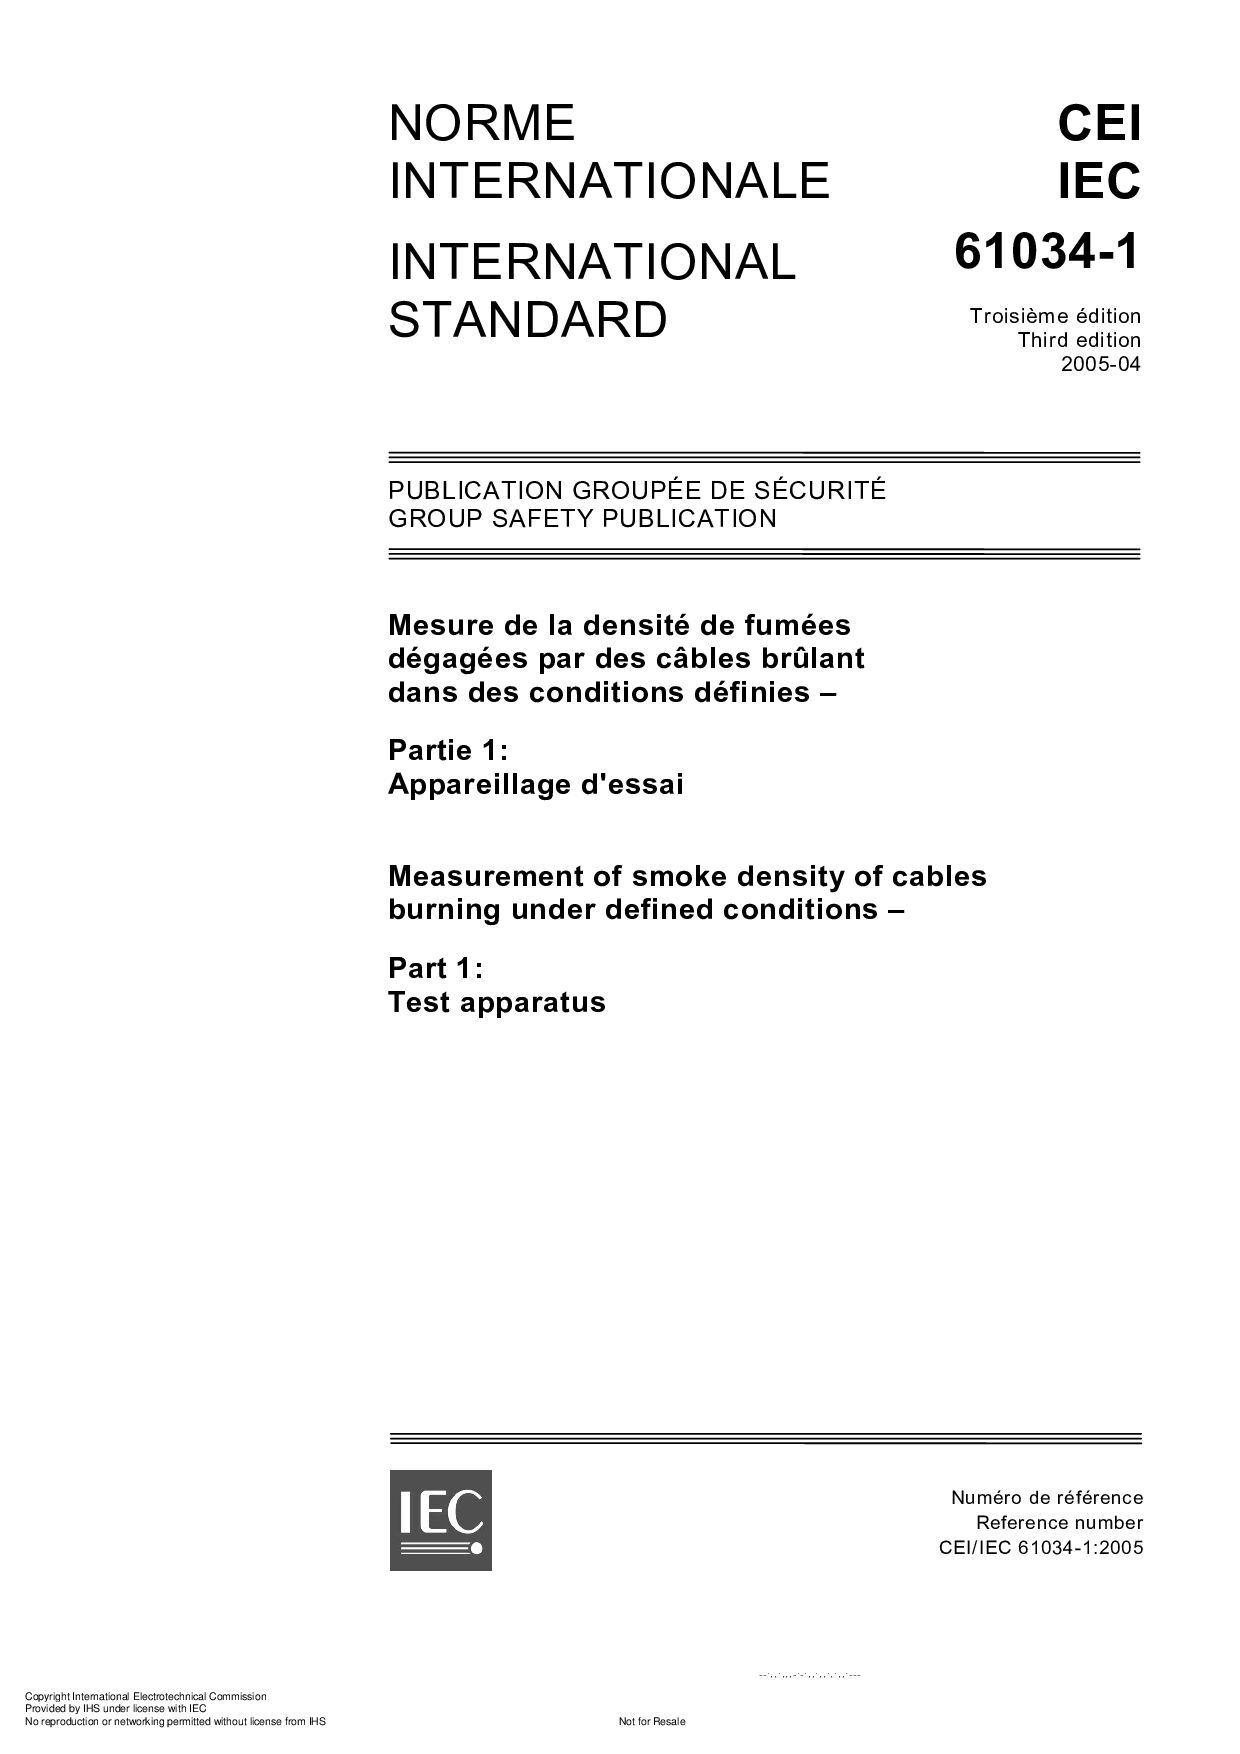 IEC 61034-1:2005